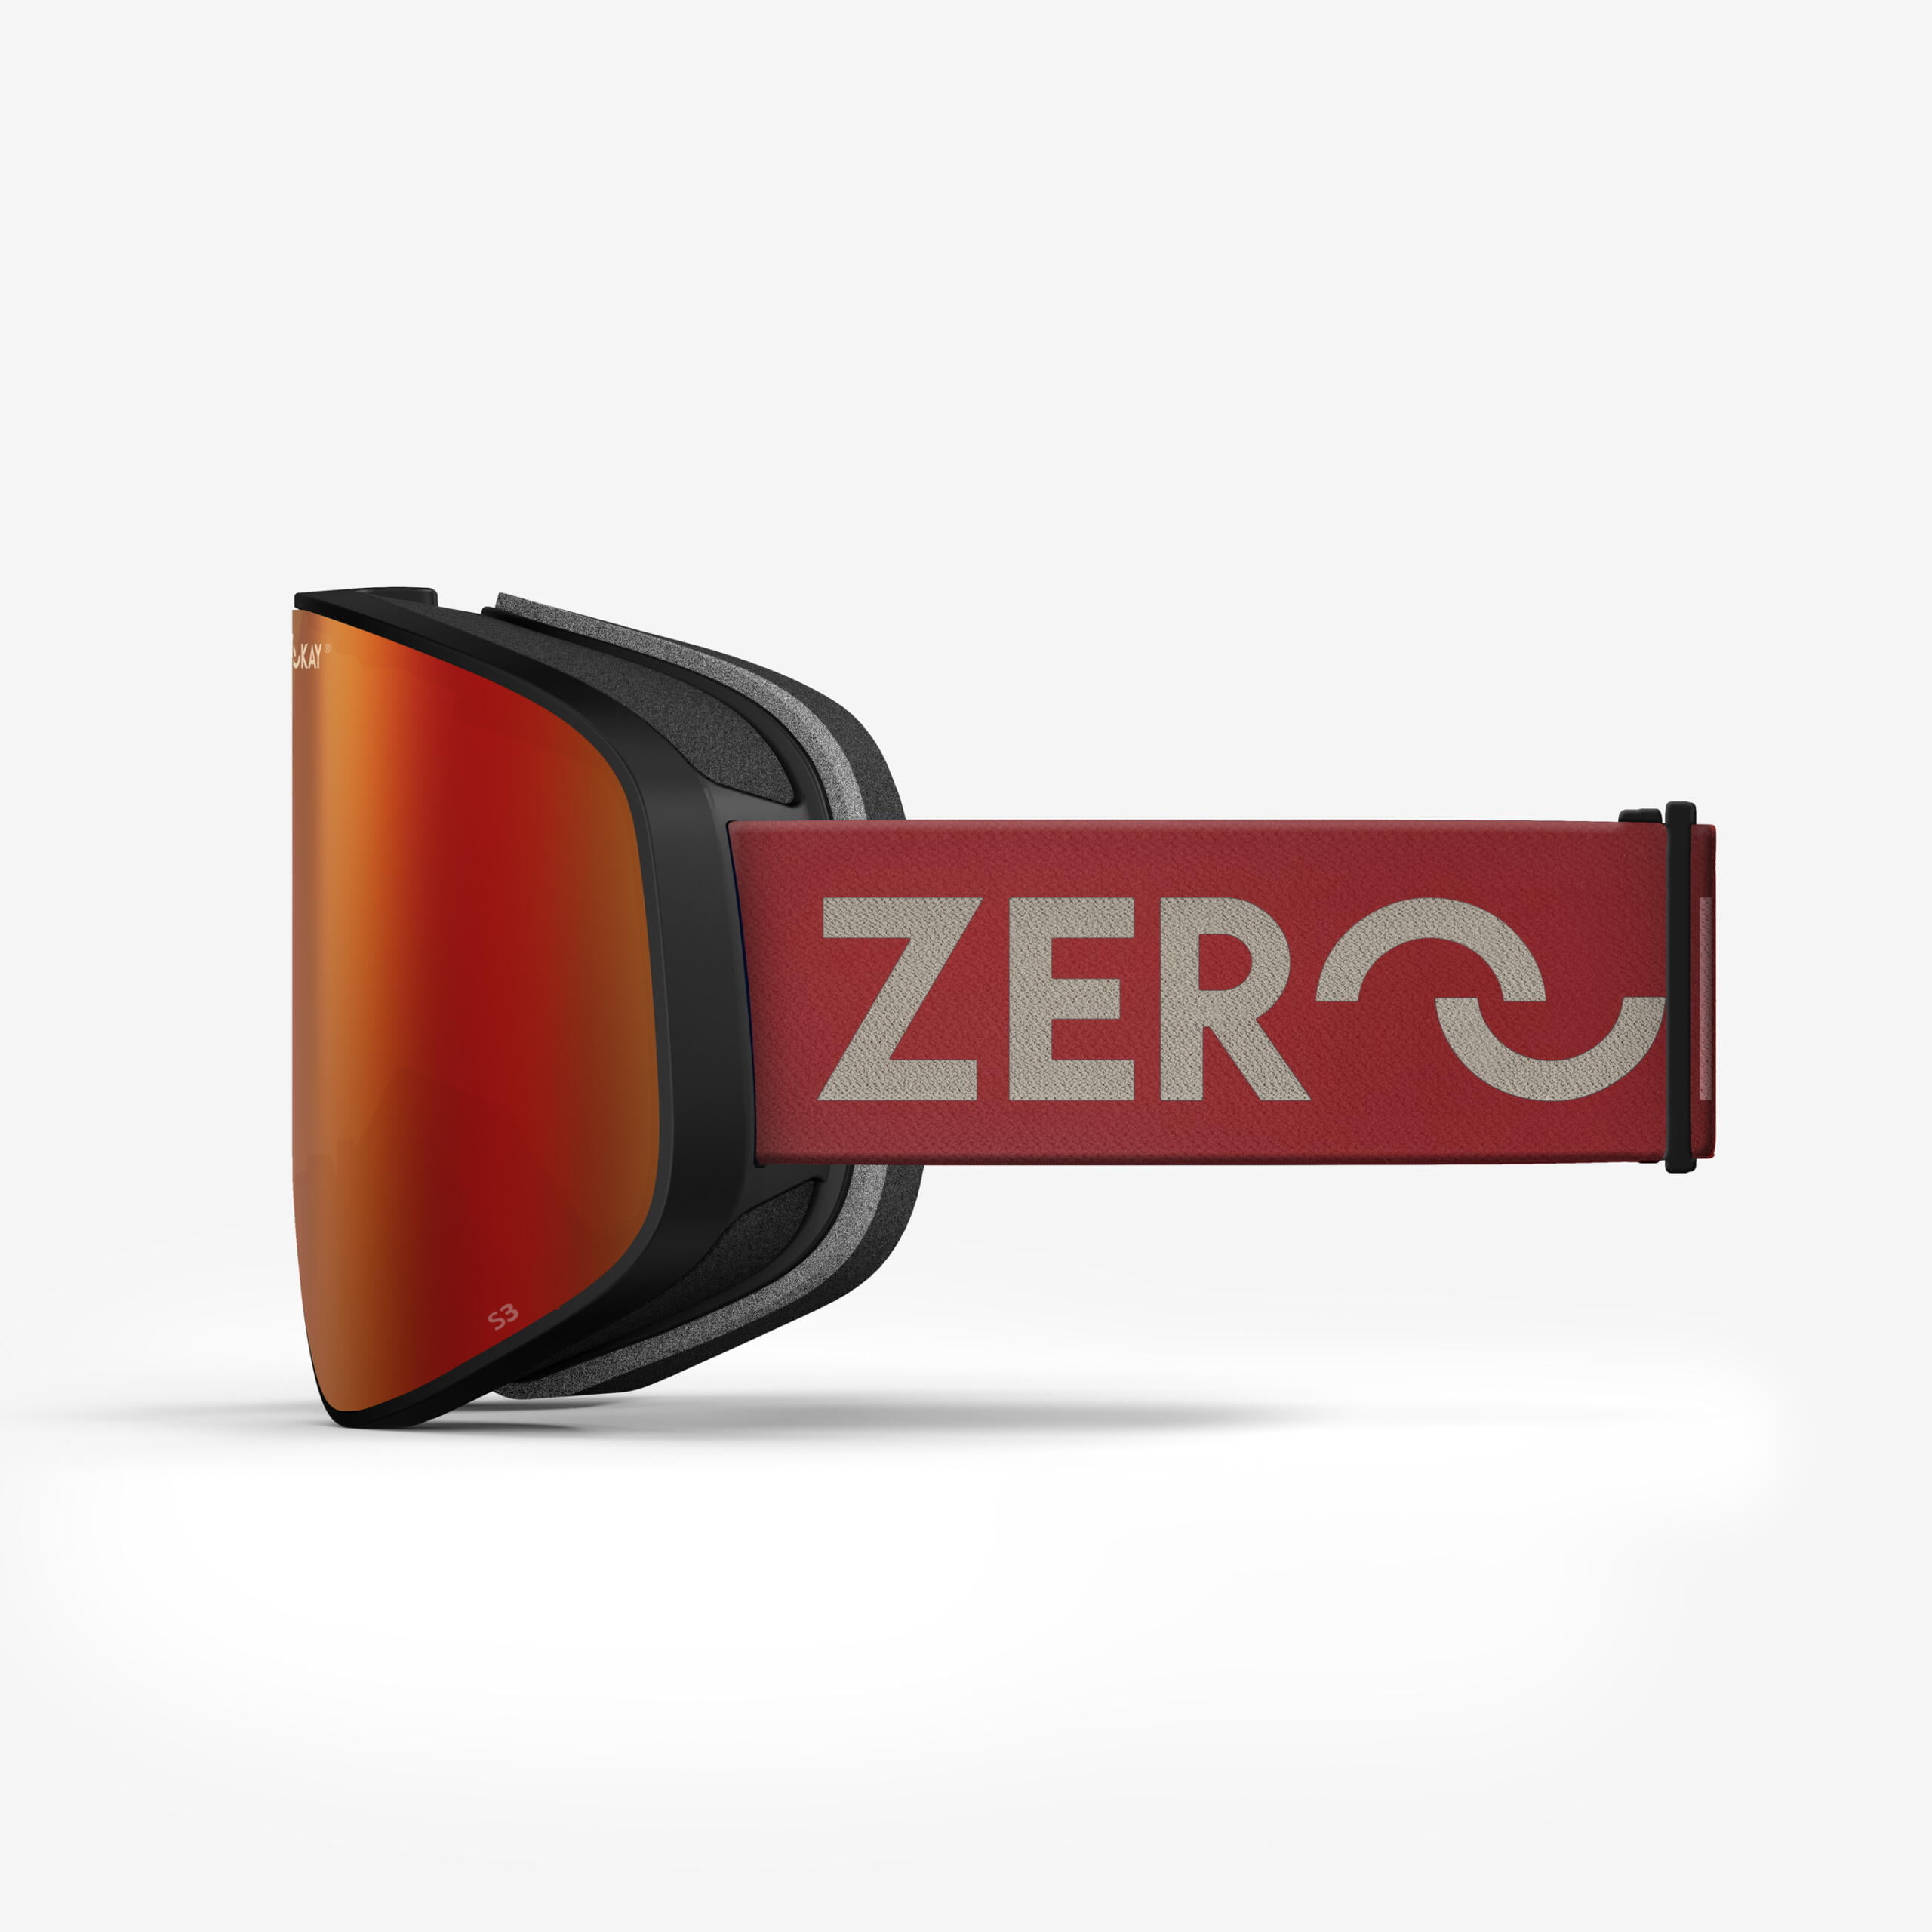 Masque de ski Zerokay Contrast avec un verre rouge et élastique rouge, équipé d'un traitement anti-buée, de mousse antibactérienne à 3 couches et d'un sac de protection pour des performances optimales.